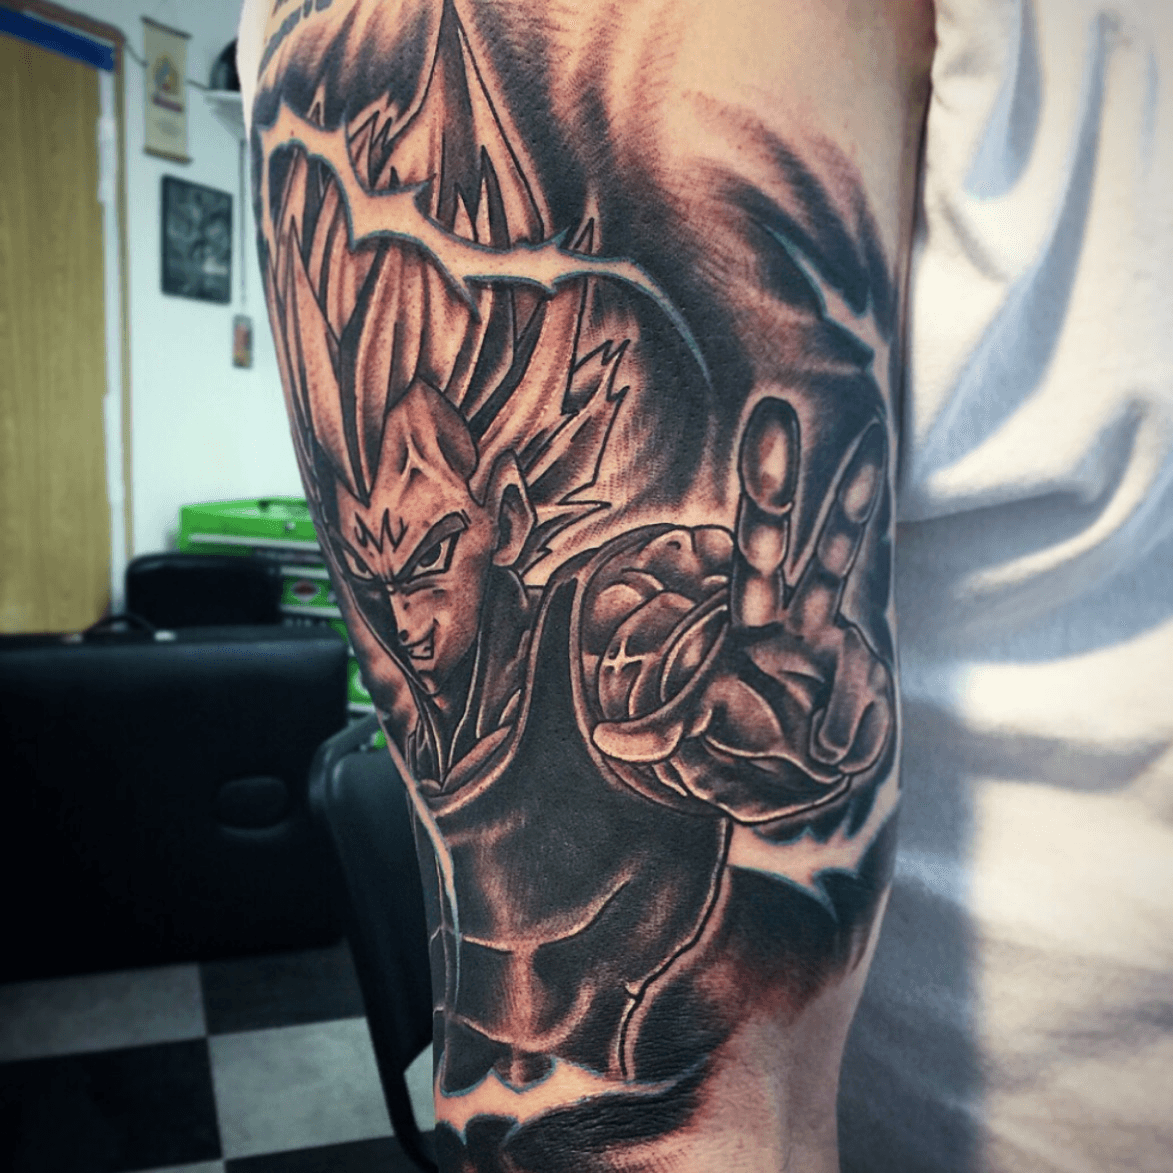 Tattoo uploaded by Statiktattoo • Majin vegeta, Dragon Ball Z #vegeta  #dragonball #dragonballz #majin #malo #vegetatattoo #chiletattoo  #chiletatuajes #tatuajes #tattoo #black #ink #chile_tatuajes  #tatuadoreschilenos • Tattoodo